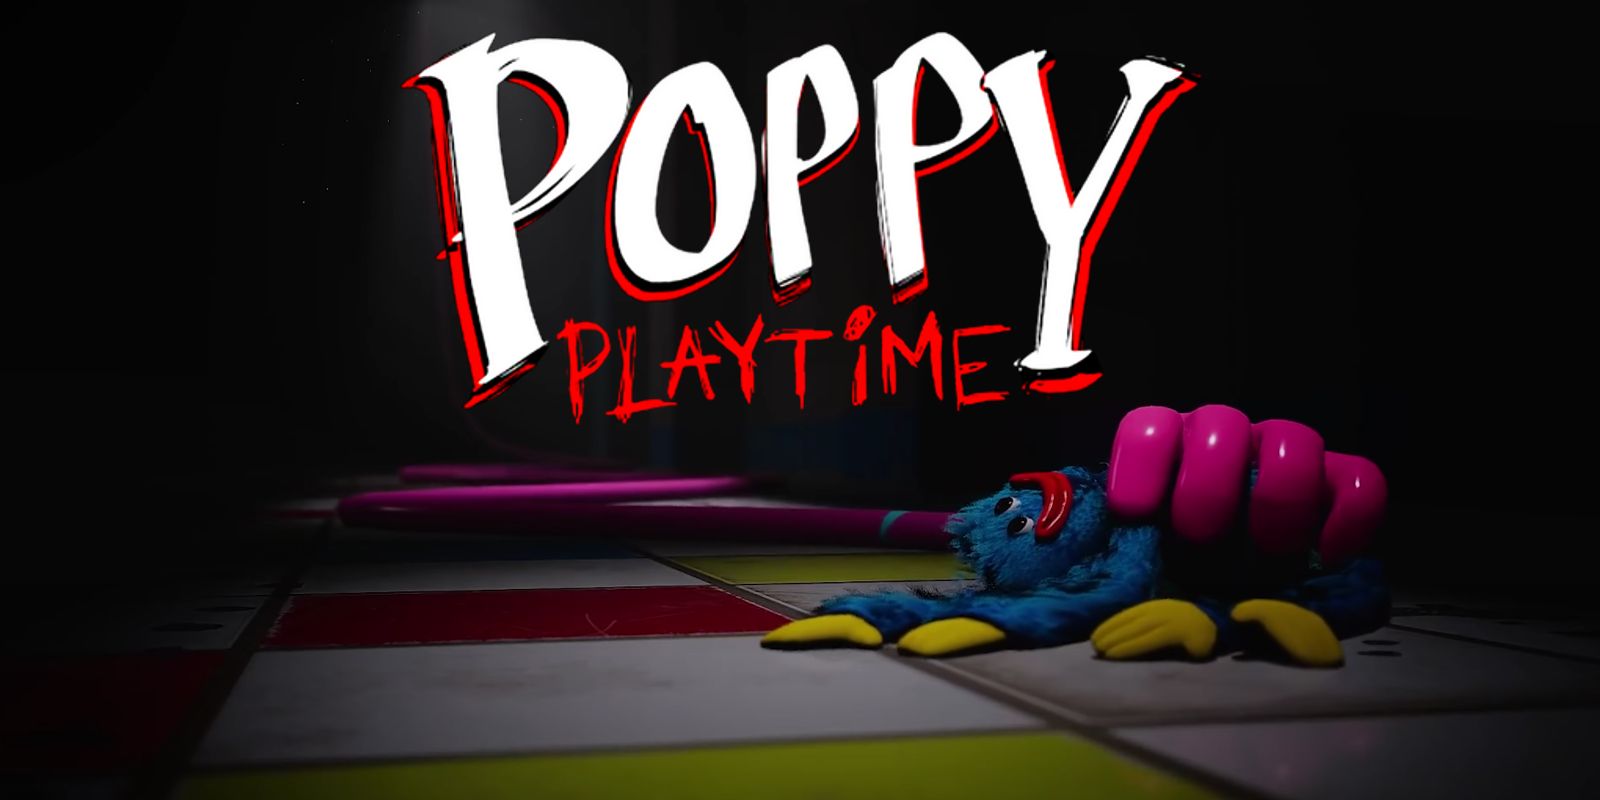 Poppy Playtime Ch. 2 Data de lançamento: maiores vazamentos e